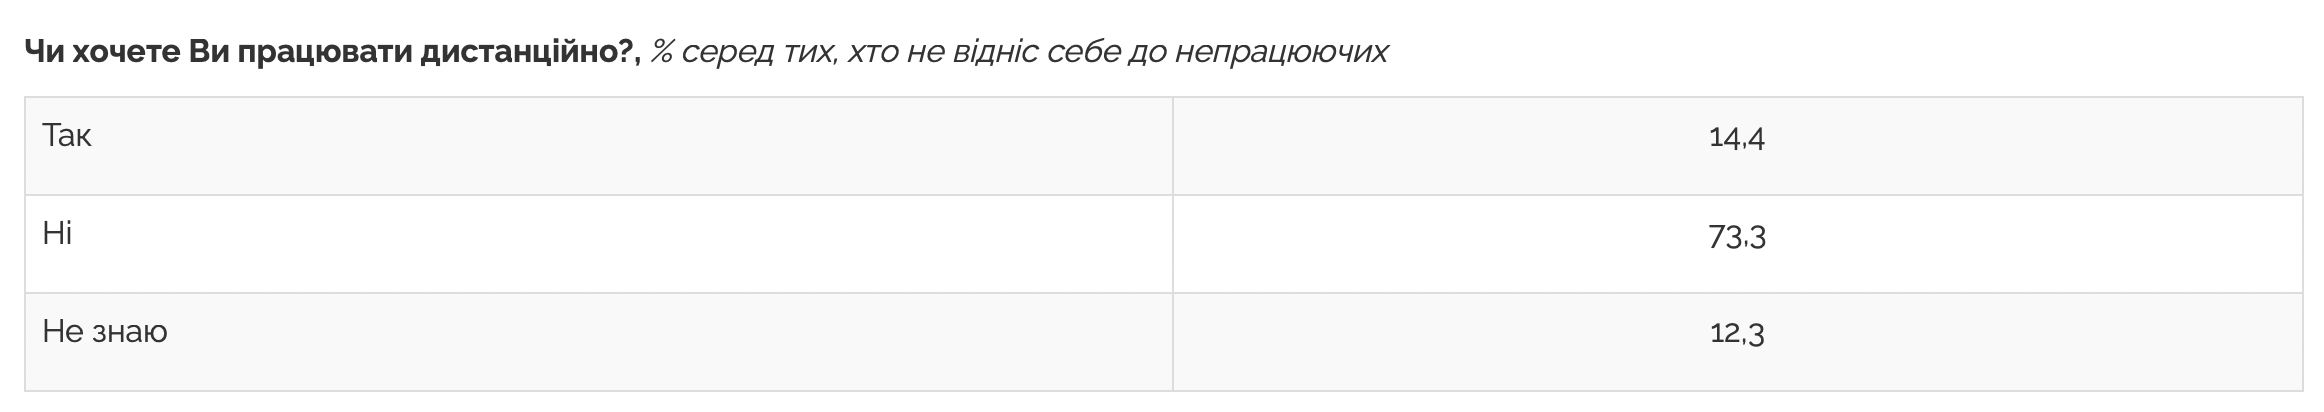 Подавляющее большинство украинцев не хотят работать дистанционно - опрос